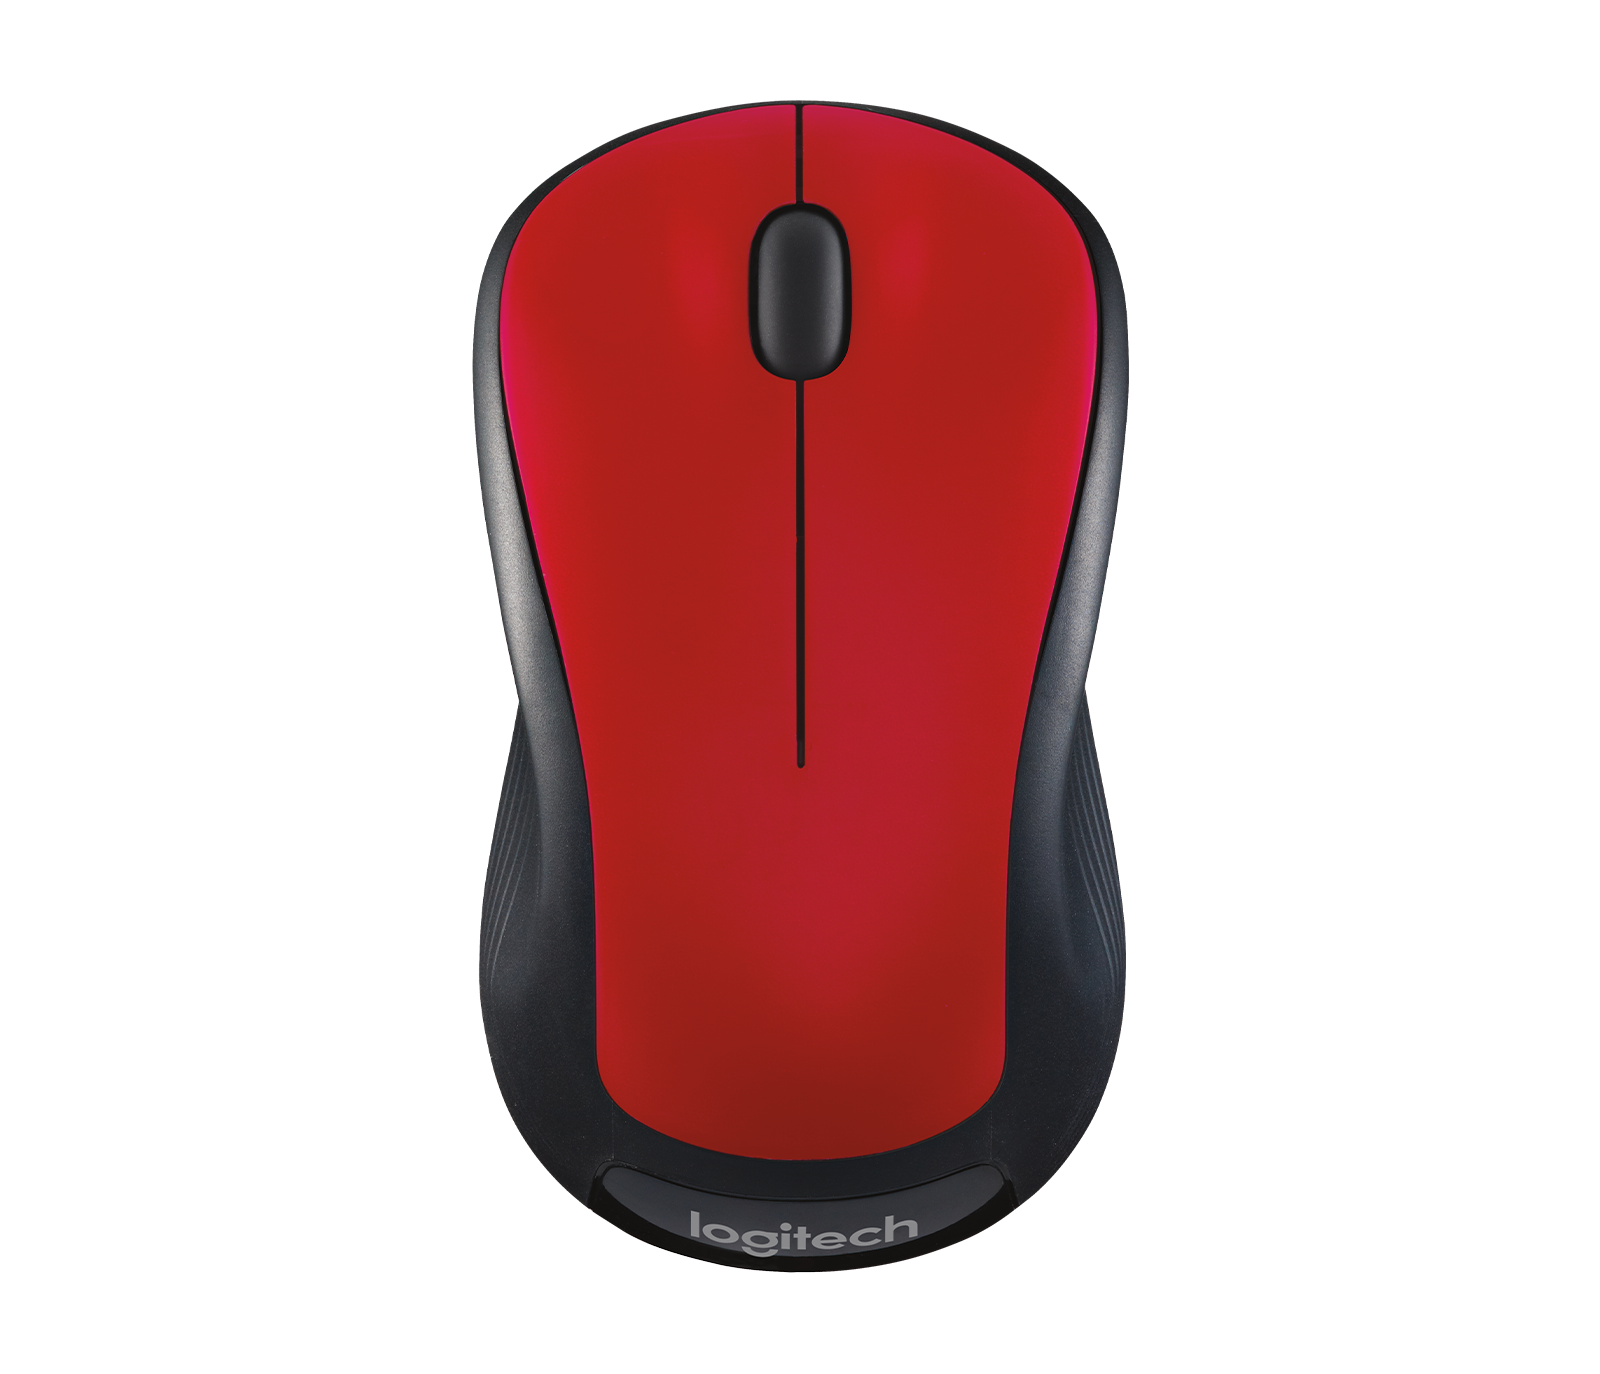 miles rent faktisk mørk Logitech M310 Wireless Mouse with Ambidextrous Design